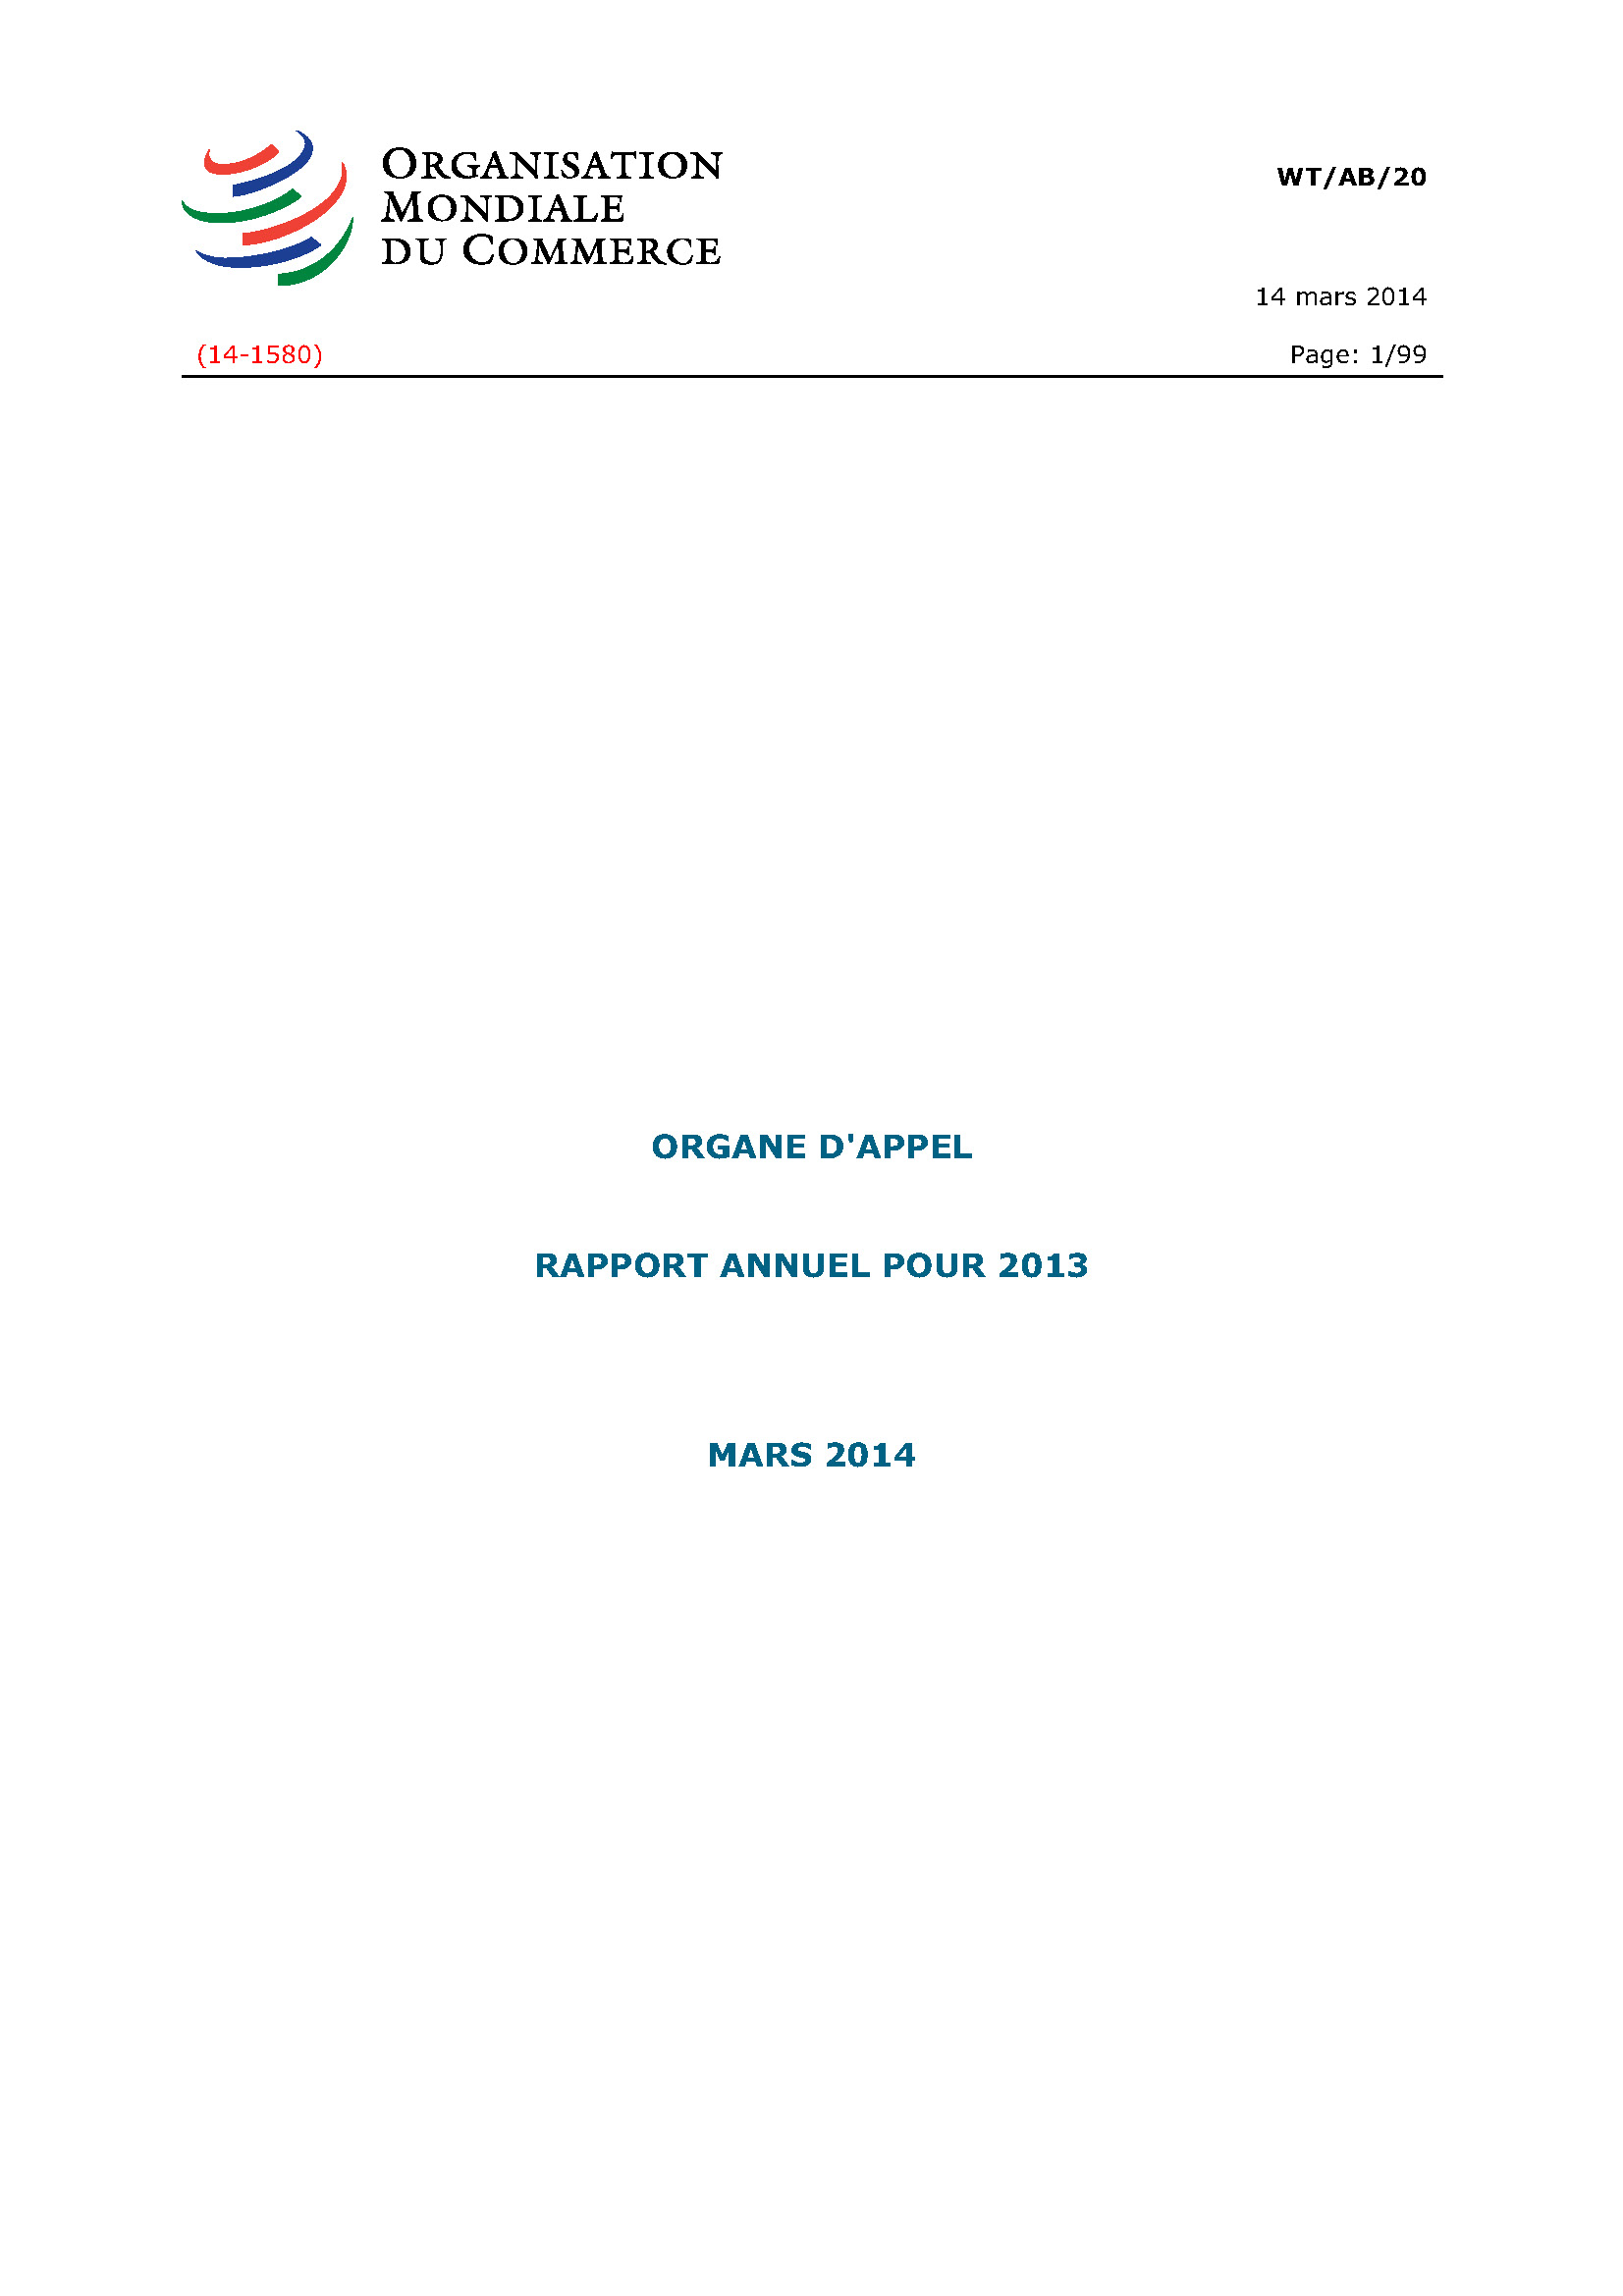 image of Rapport annuel de l’organe d’appel pour 2013